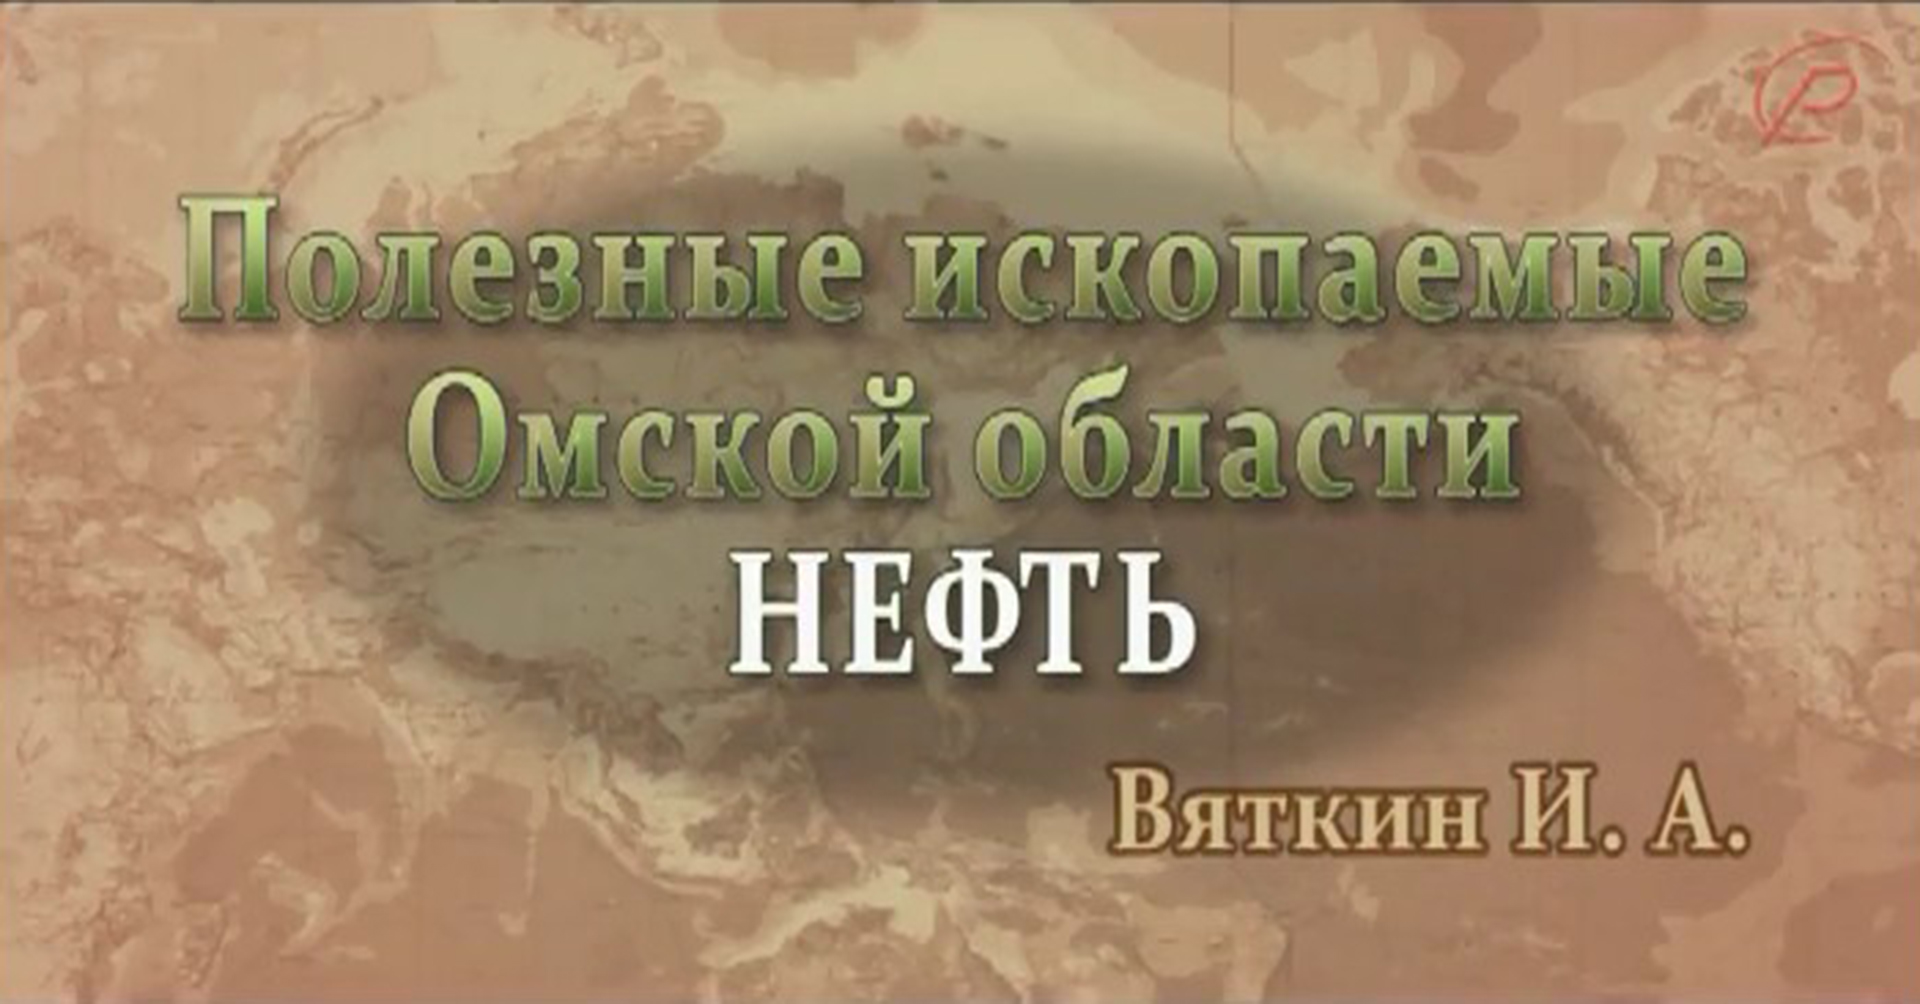 Полезные ископаемые Омской области - нефть